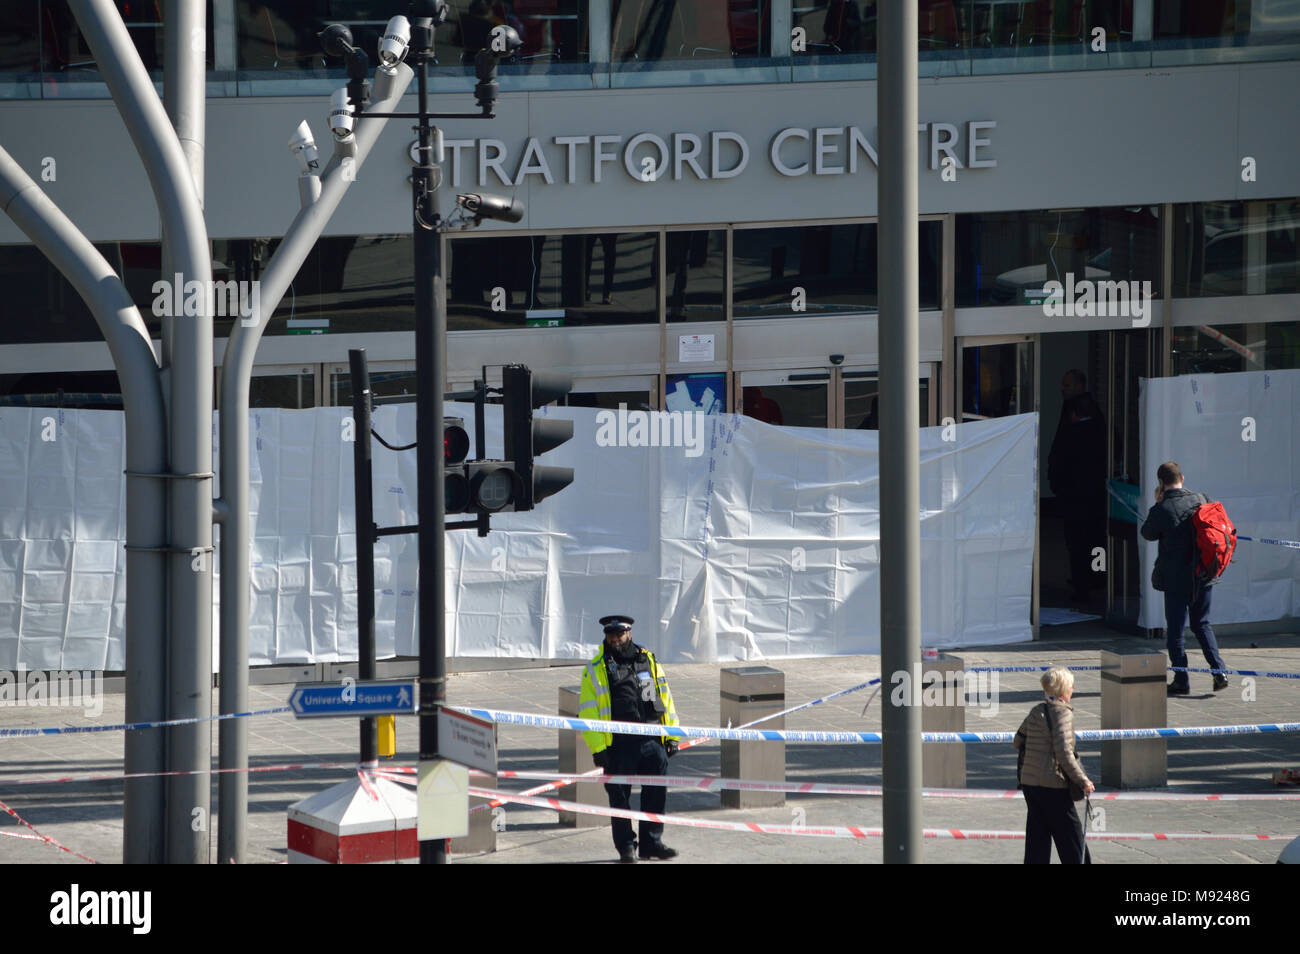 Londra, UK, 21 marzo 2018 cordone di polizia per l' assassinio di scena a Stratford Shopping center nella zona est di Londra -. Credito: un Christy/Alamy Live News. Foto Stock